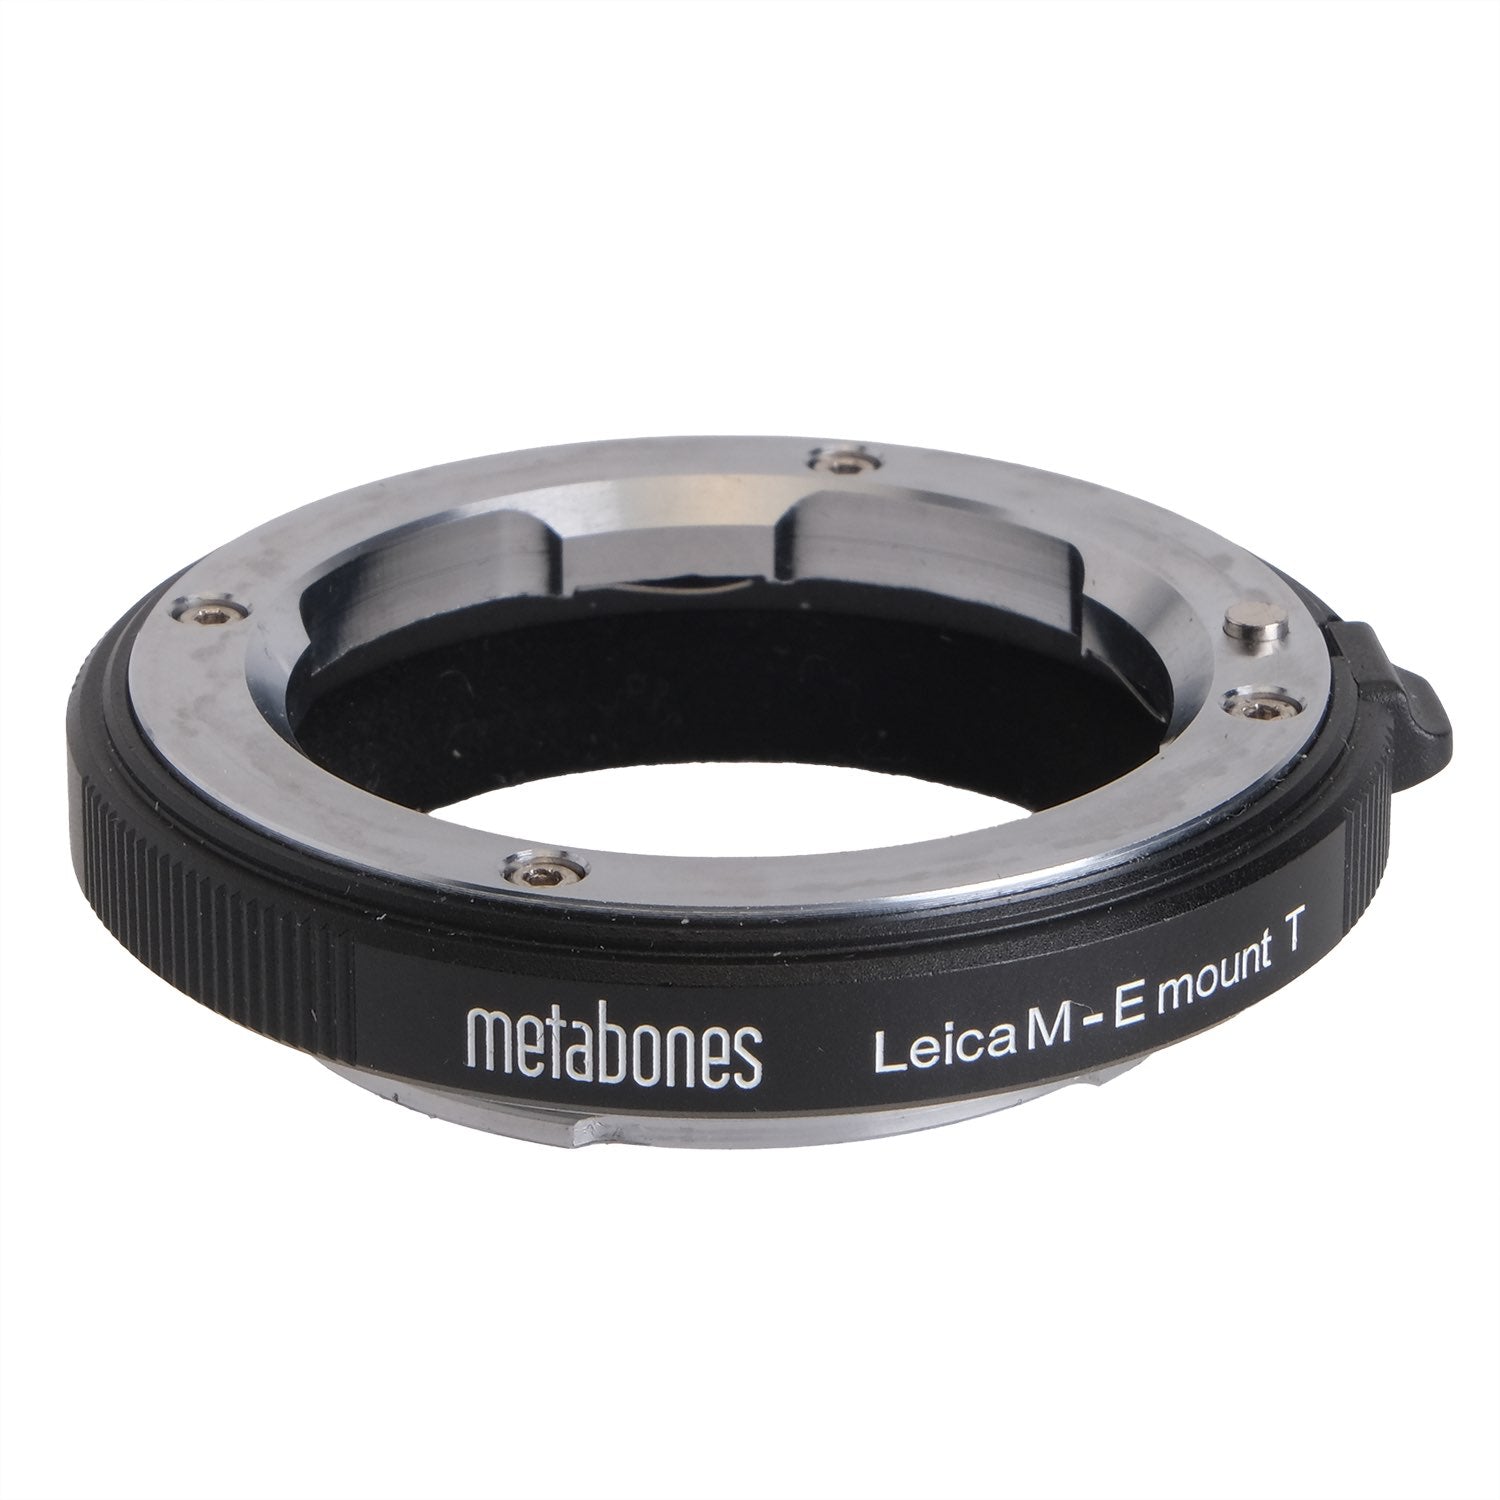 Metabones Leica M-E Mount T 8857315